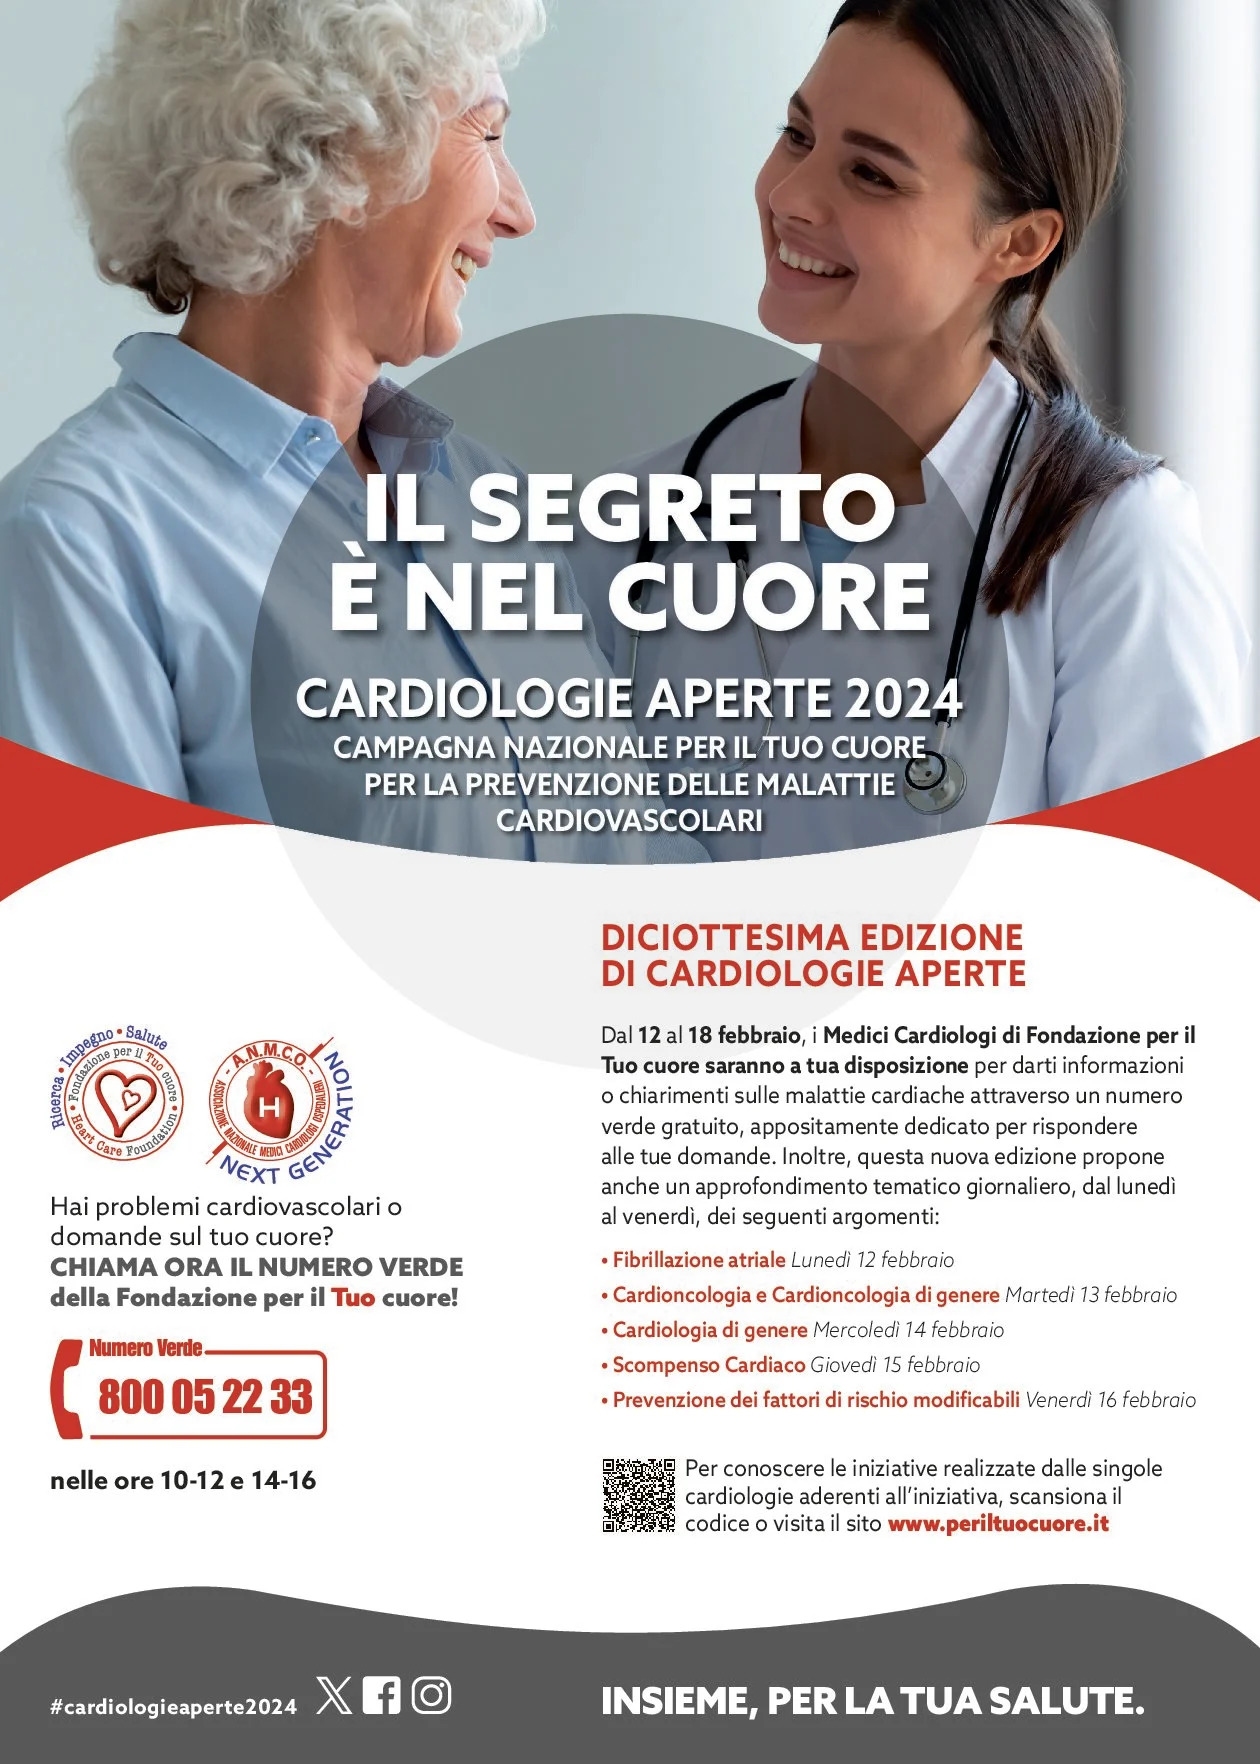 Cardiologie Aperte 2024. Campagna nazionale per la prevenzione delle malattie cardiovascolari.